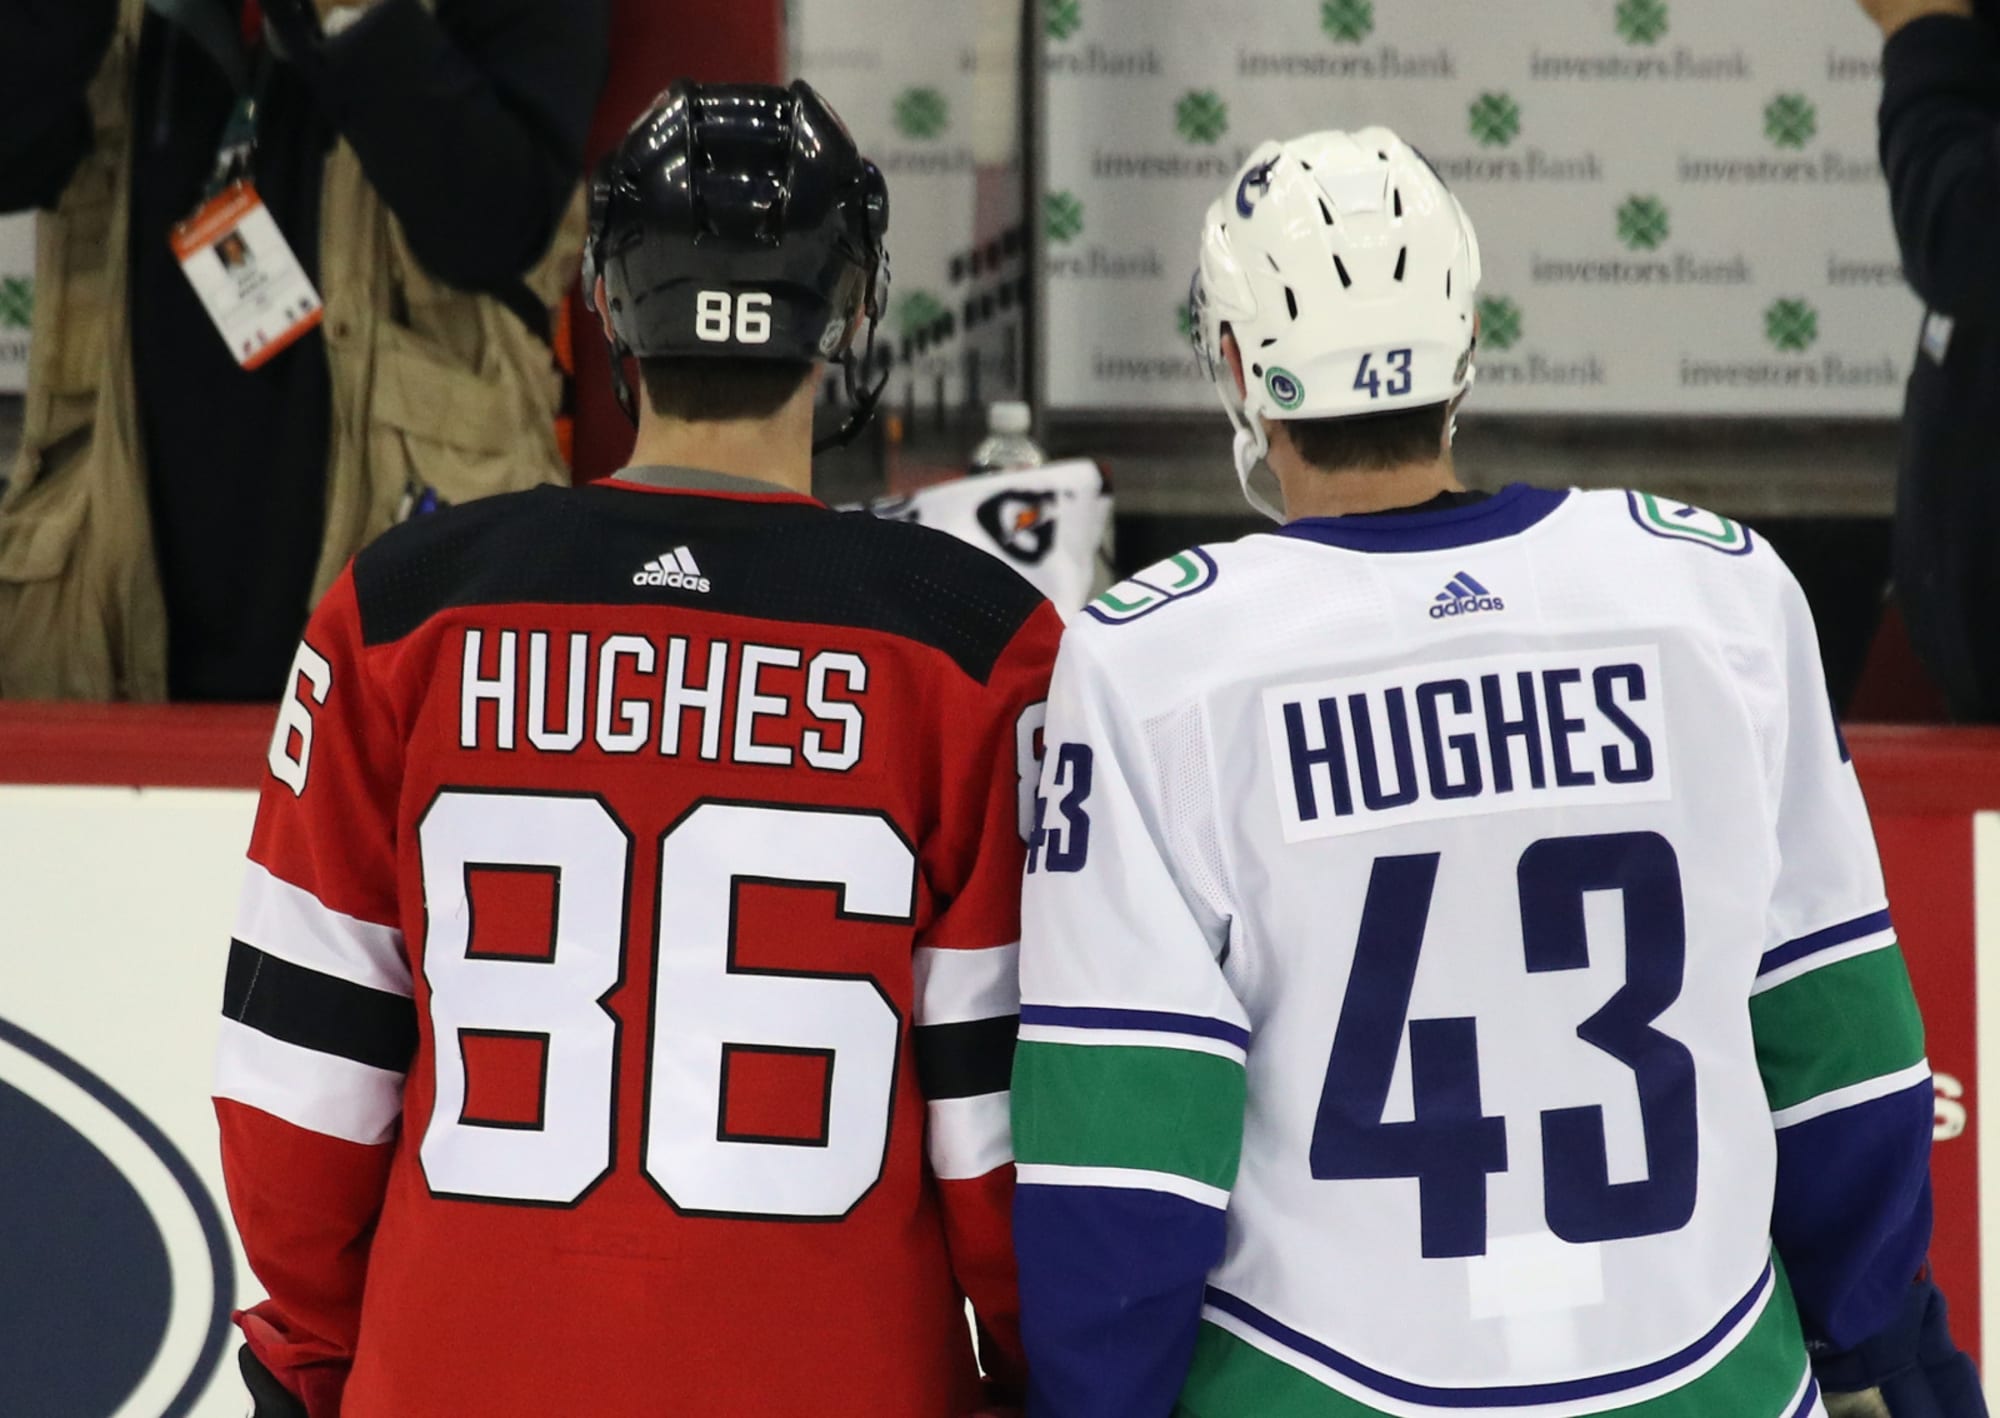 Luke, Jack Hughes could both be Devils after 2021 NHL Draft